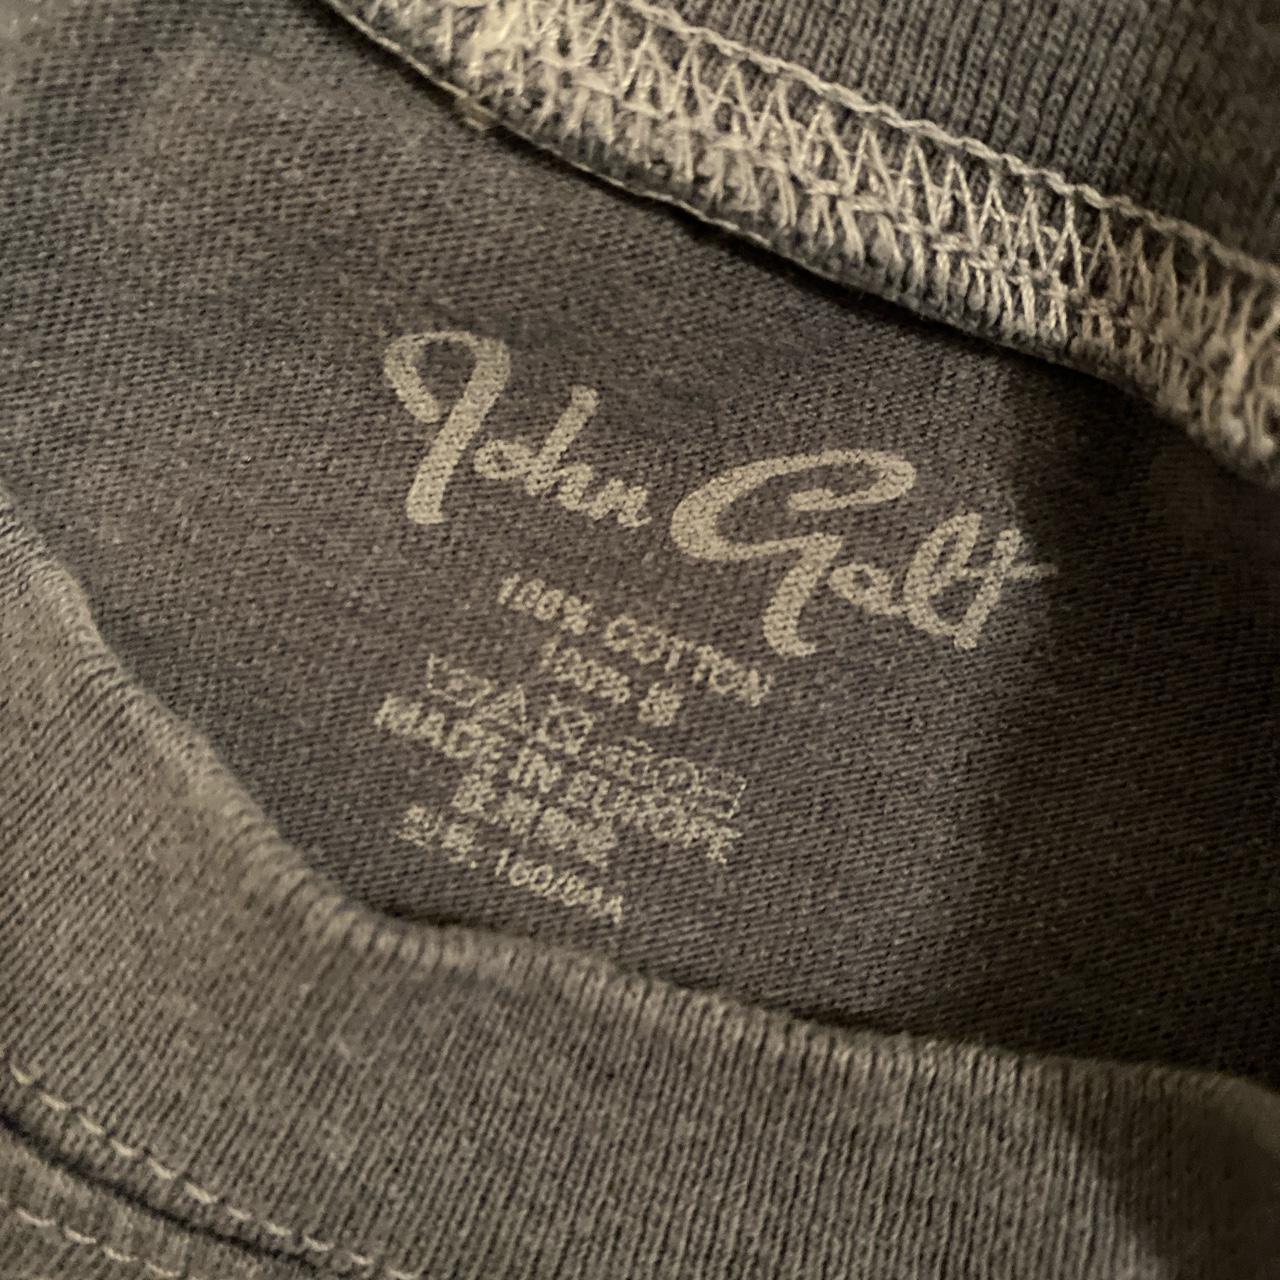 John Galt Nantucket Island T-Shirt sold out... - Depop